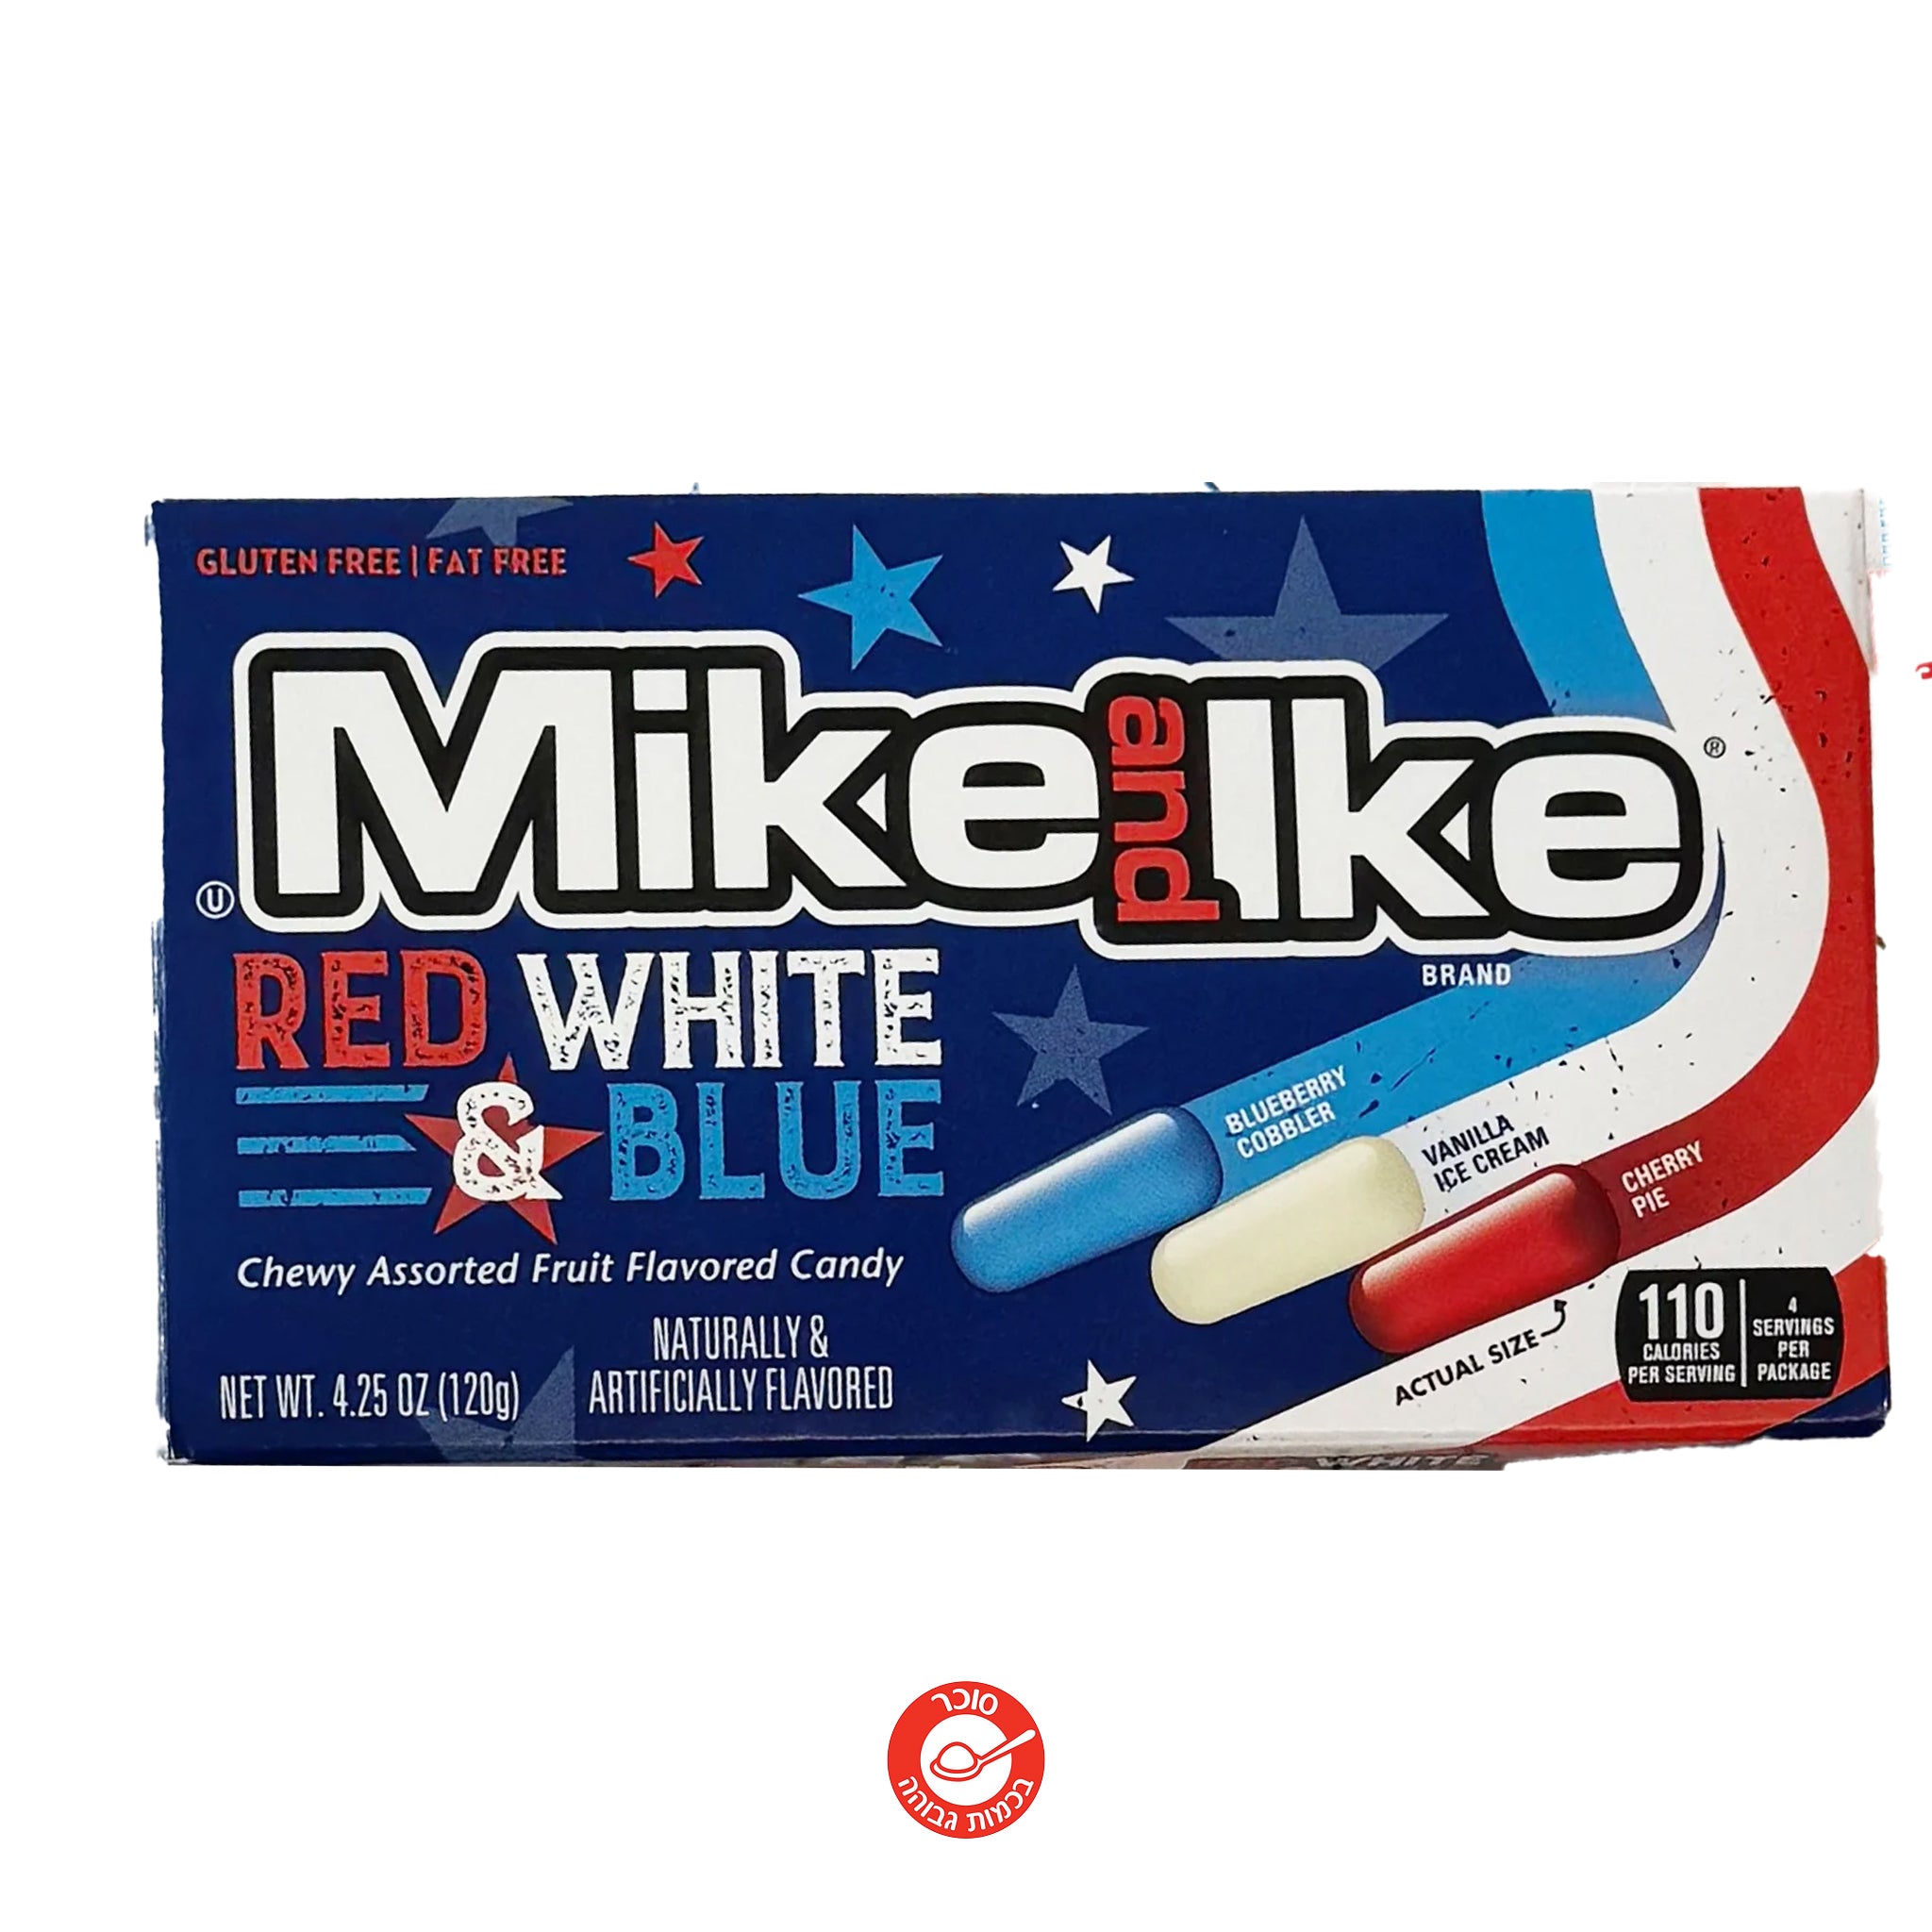 Mike And Ike Patriot מייק אנד אייק גרסט פטריוט צבעי הדגל האמריקאי